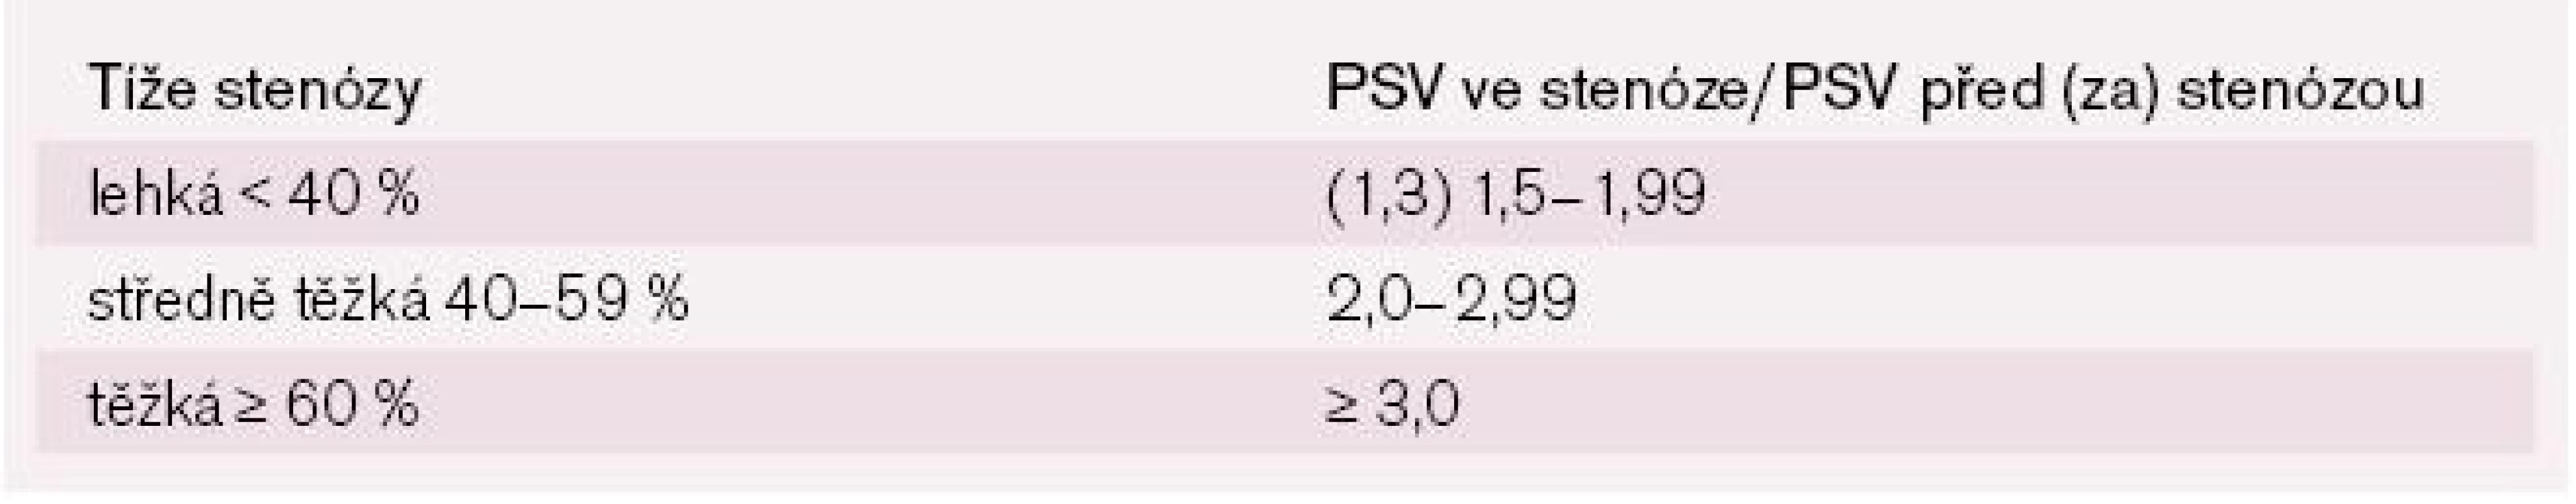 Určení tíže intrakraniálních stenóz podle poměru PSV ve stenóze ku PSV před/za stenózou.